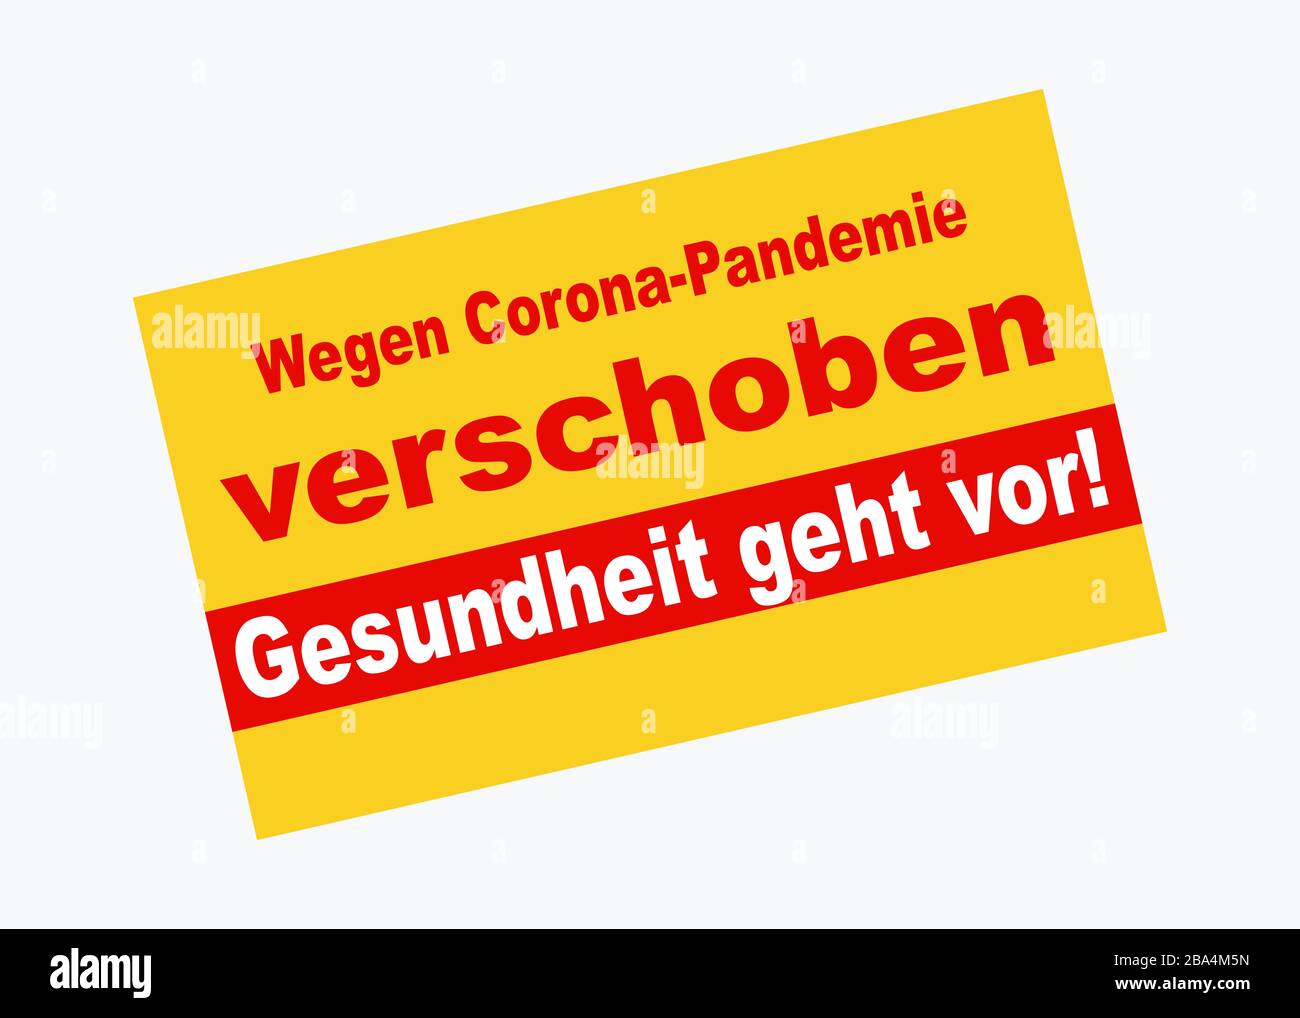 Information sign. Wegen corona pandemie verschoben. Gesundheit geht vor! (engl.:Postponed because of corona pandemic. Health first!) Stock Photo